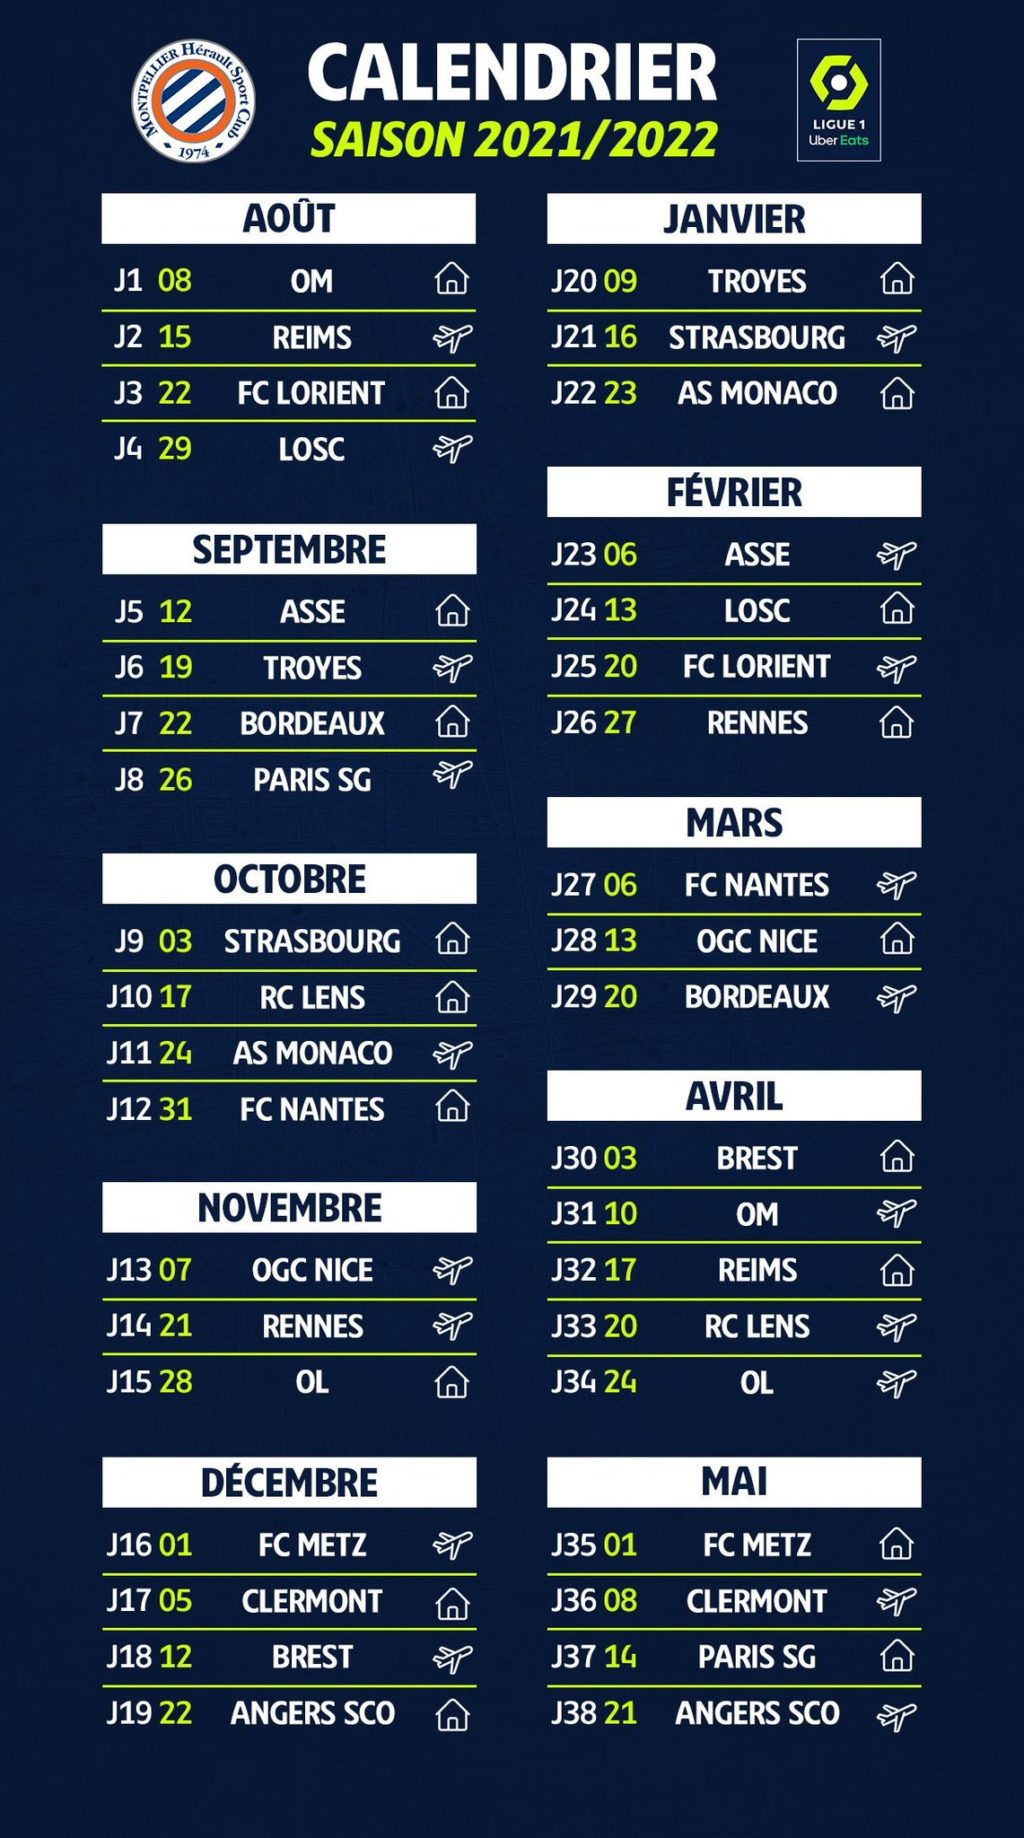 Le calendrier du MHSC pour la saison de Ligue 1 UberEats 2021/2022 est